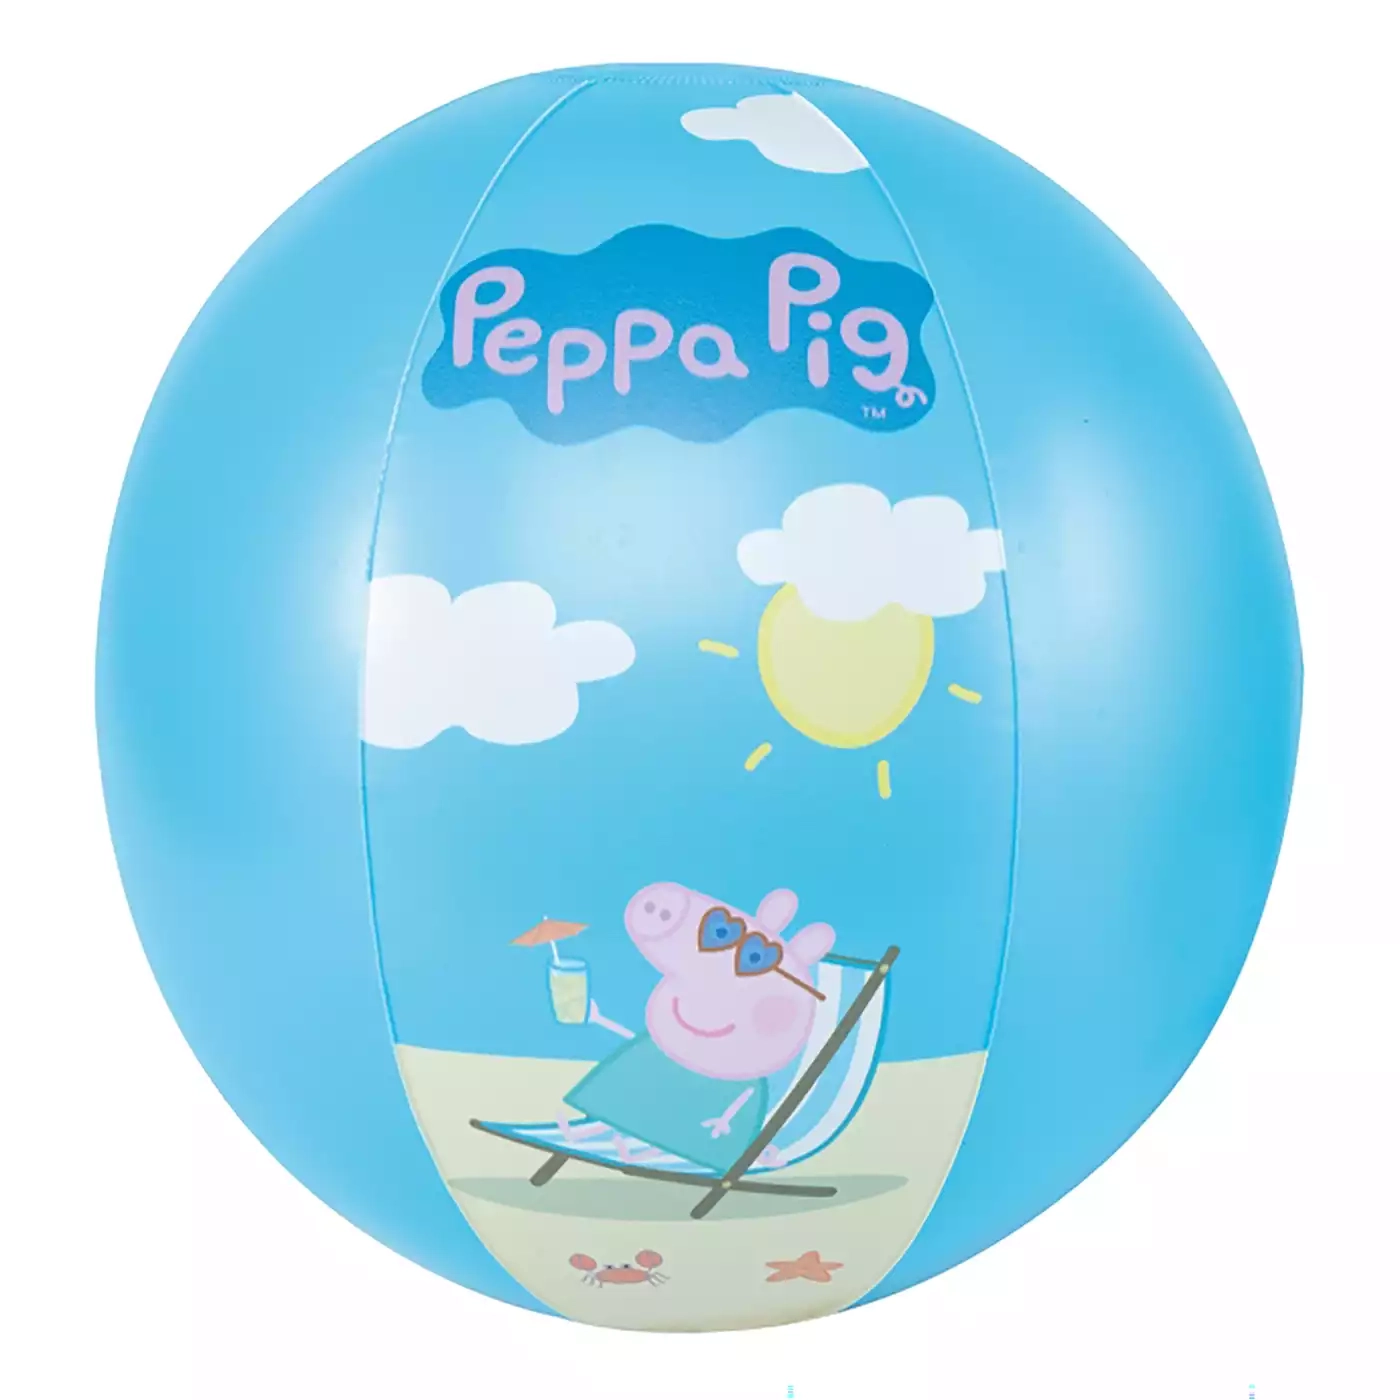 Peppa Pig Wasserball HAPPY PEOPLE Blau 2000578441708 1